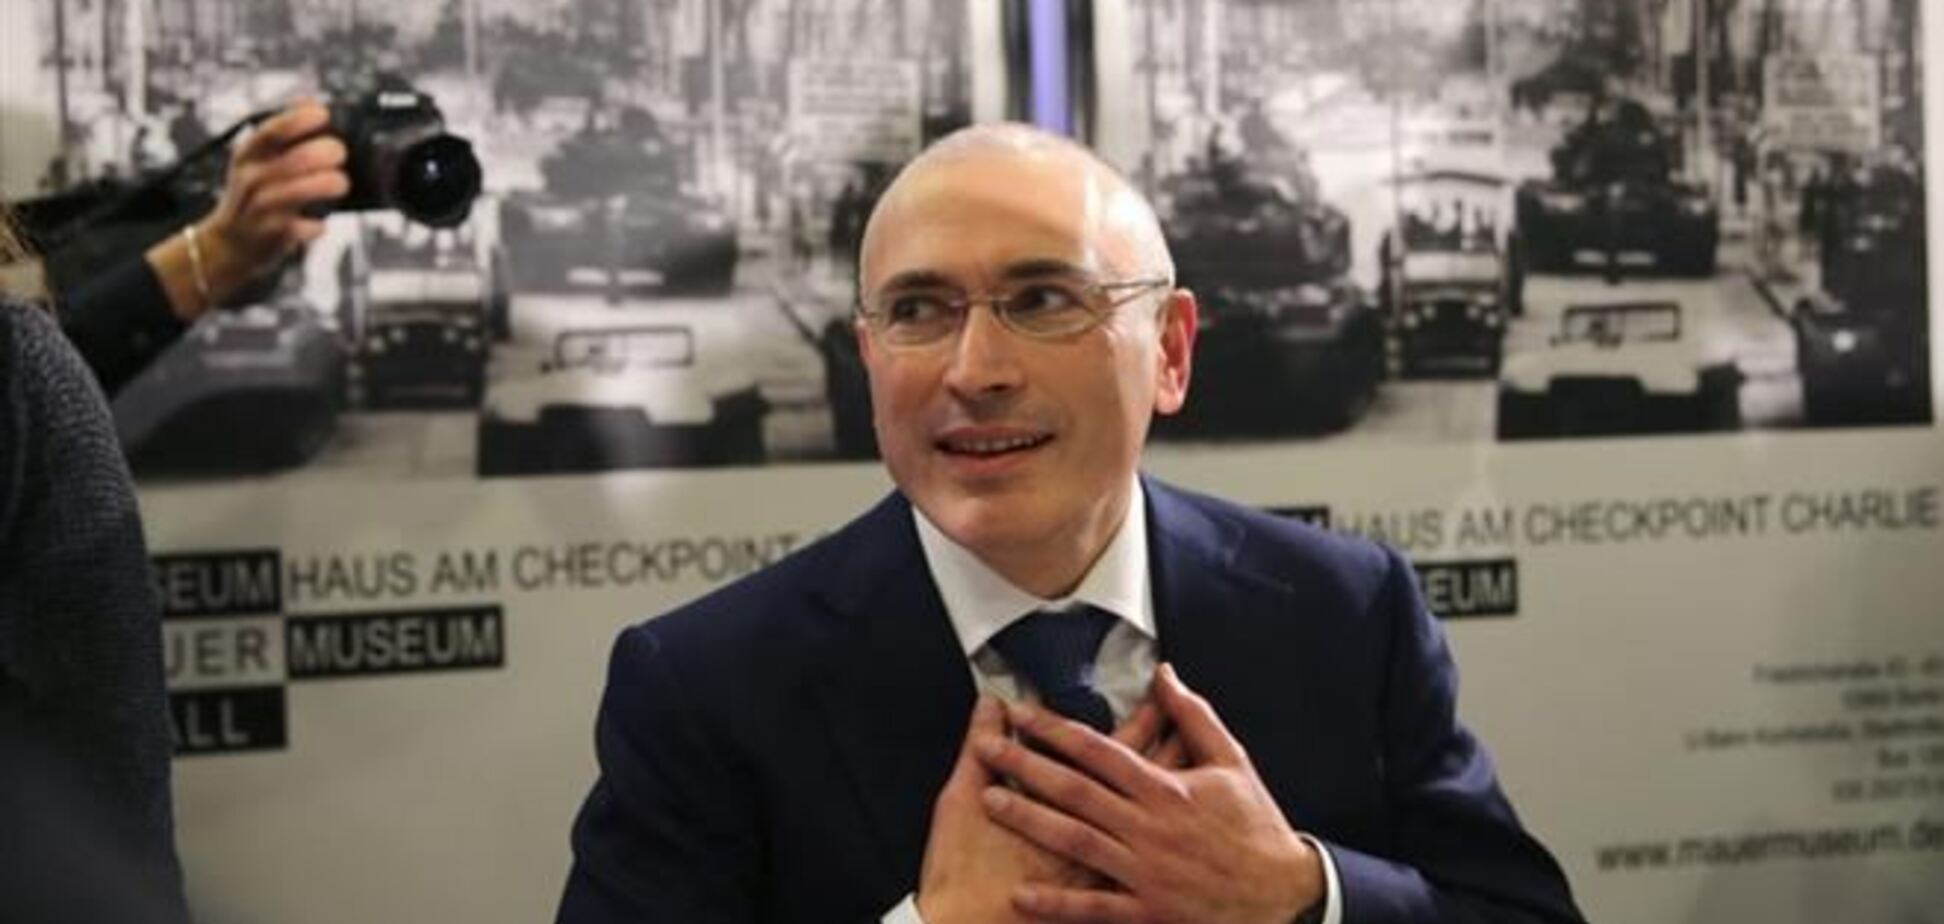 Я хочу, щоб ви знали - є інша Росія - Ходорковський на Майдані